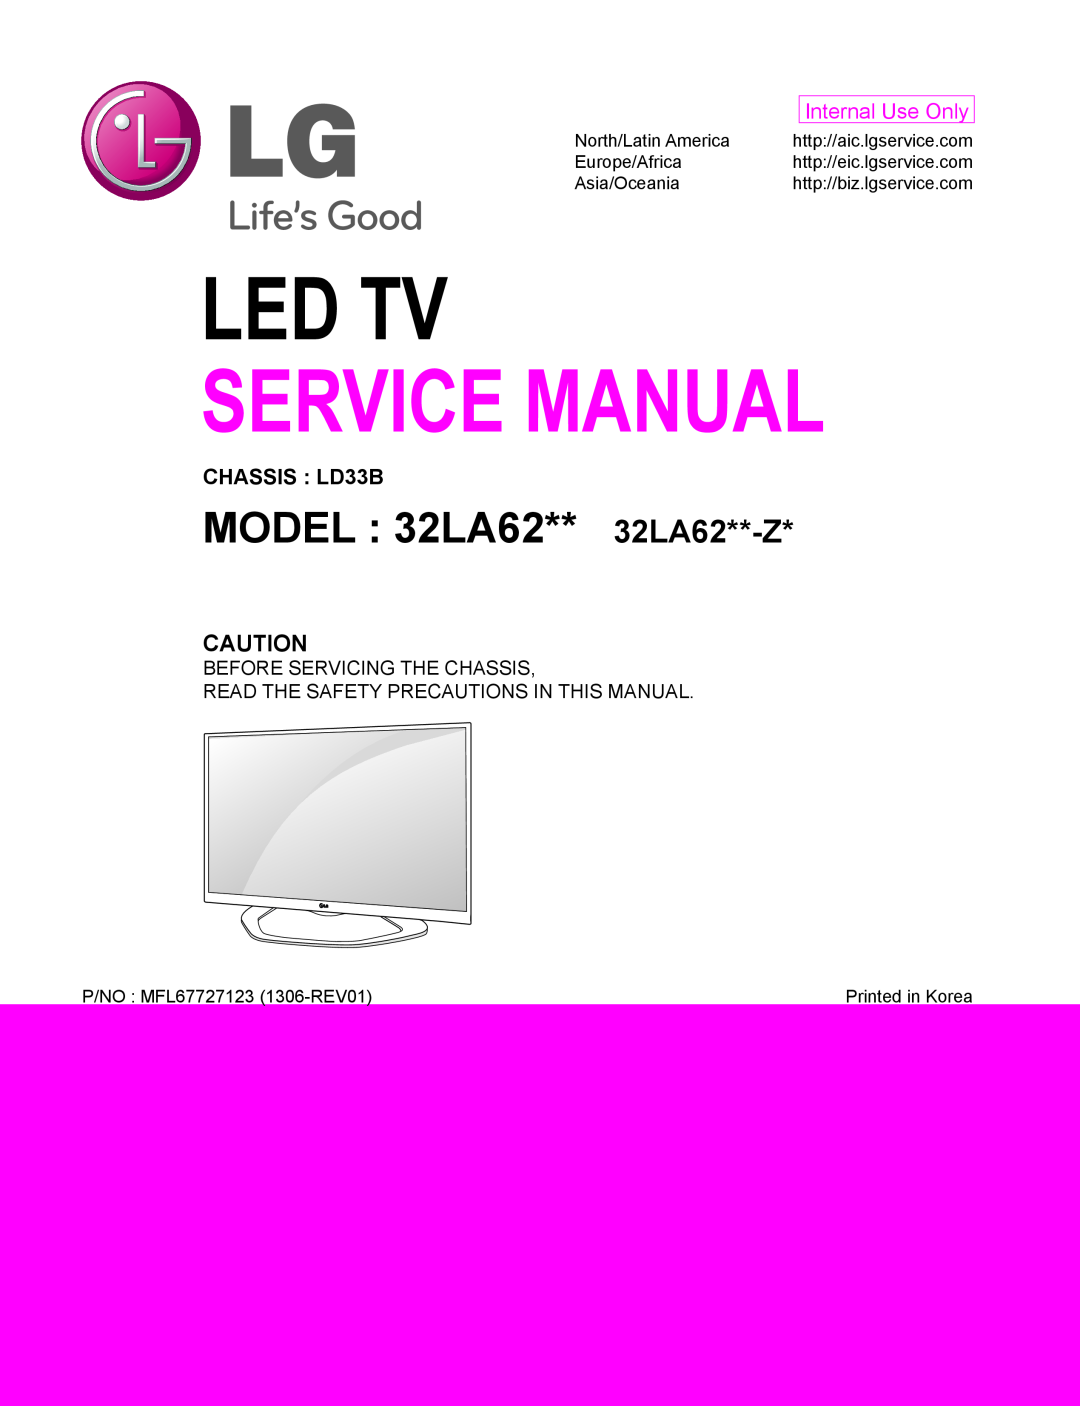 LG Electronics 32LA62**-Z* service manual MODEL 32LA62** 32LA62**-Z, Led Tv, Service Manual, Internal Use Only 